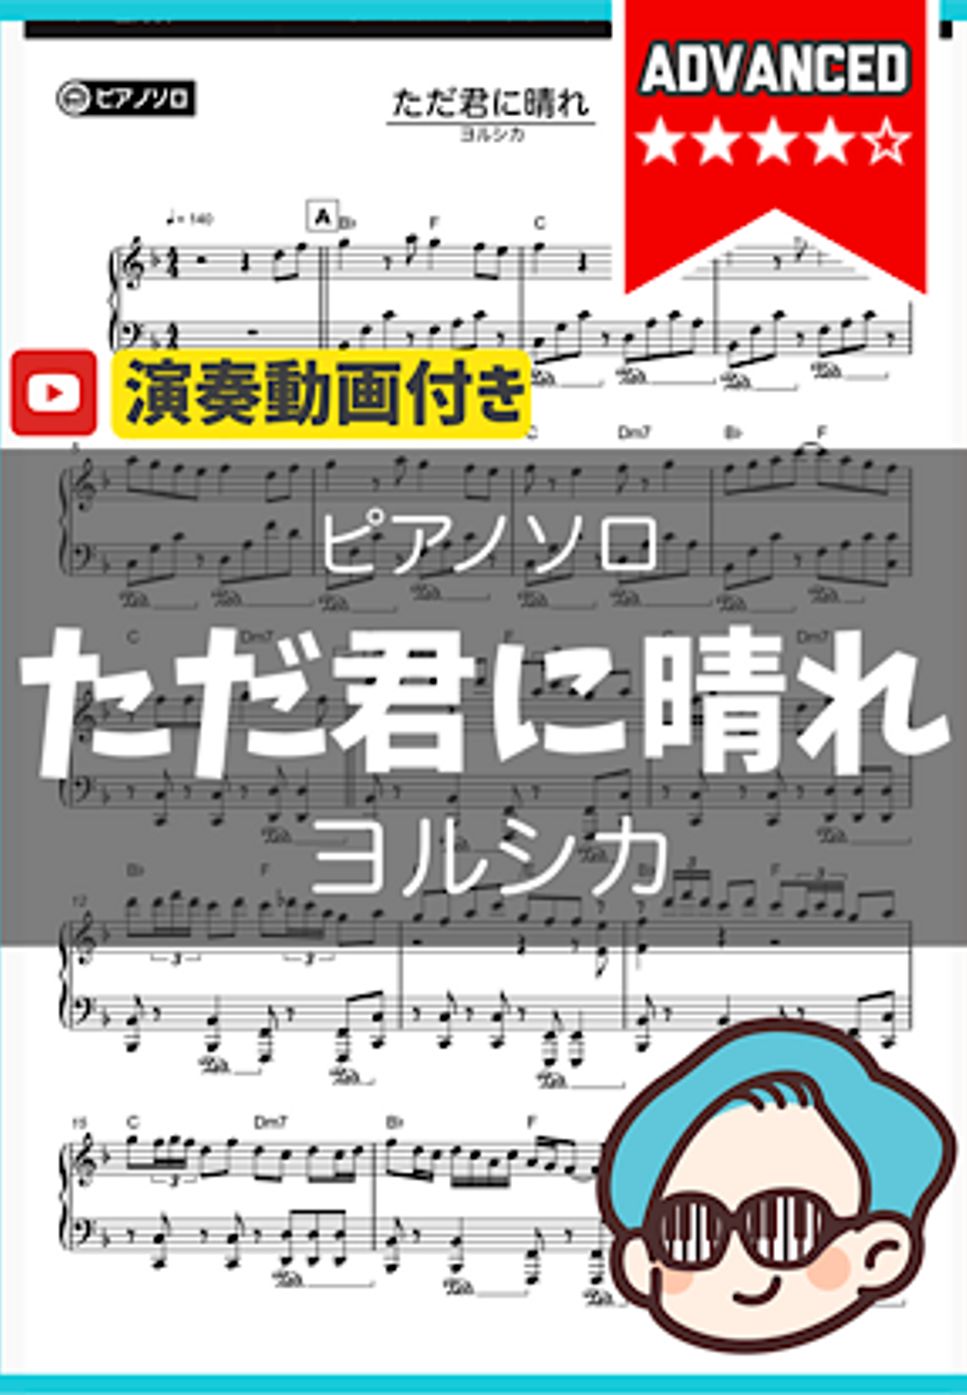 ヨルシカ - ただ君に晴れ(上級ver.) by シータピアノ